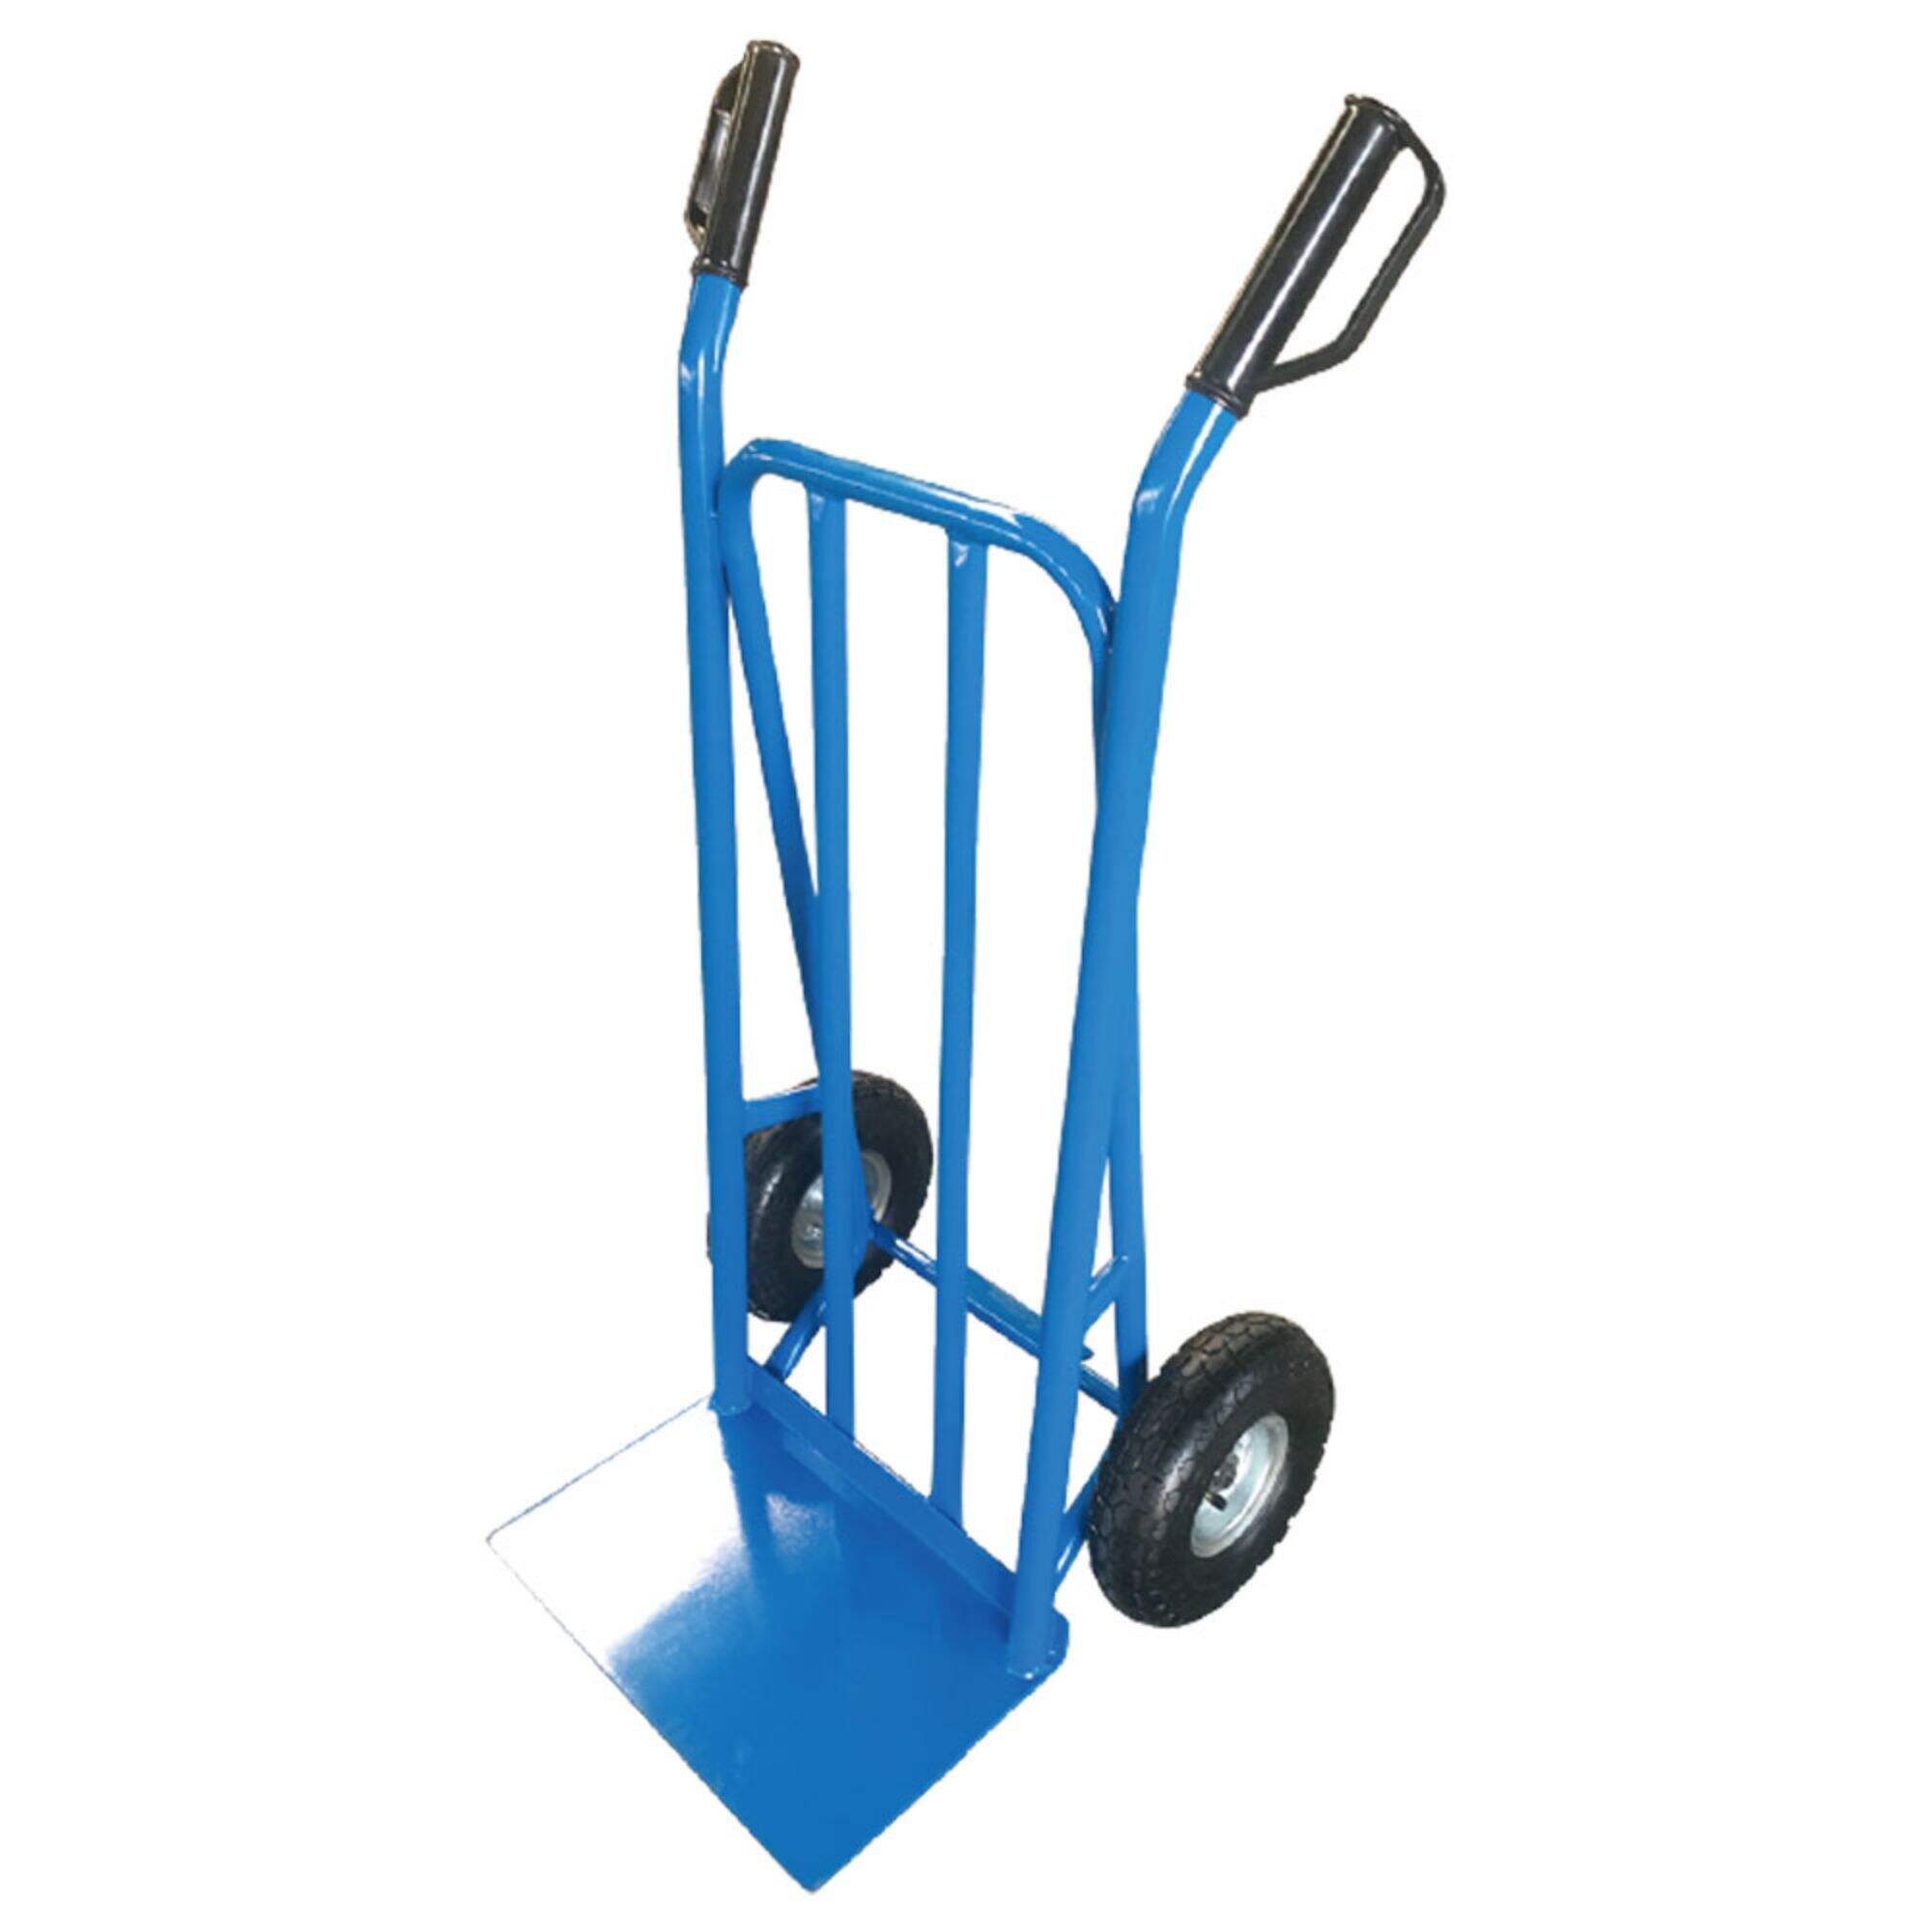 Wózek ręczny HT2132B, wózek ręczny ze stali, z 10-calowym kołem pneumatycznym 4.10/3.50-4